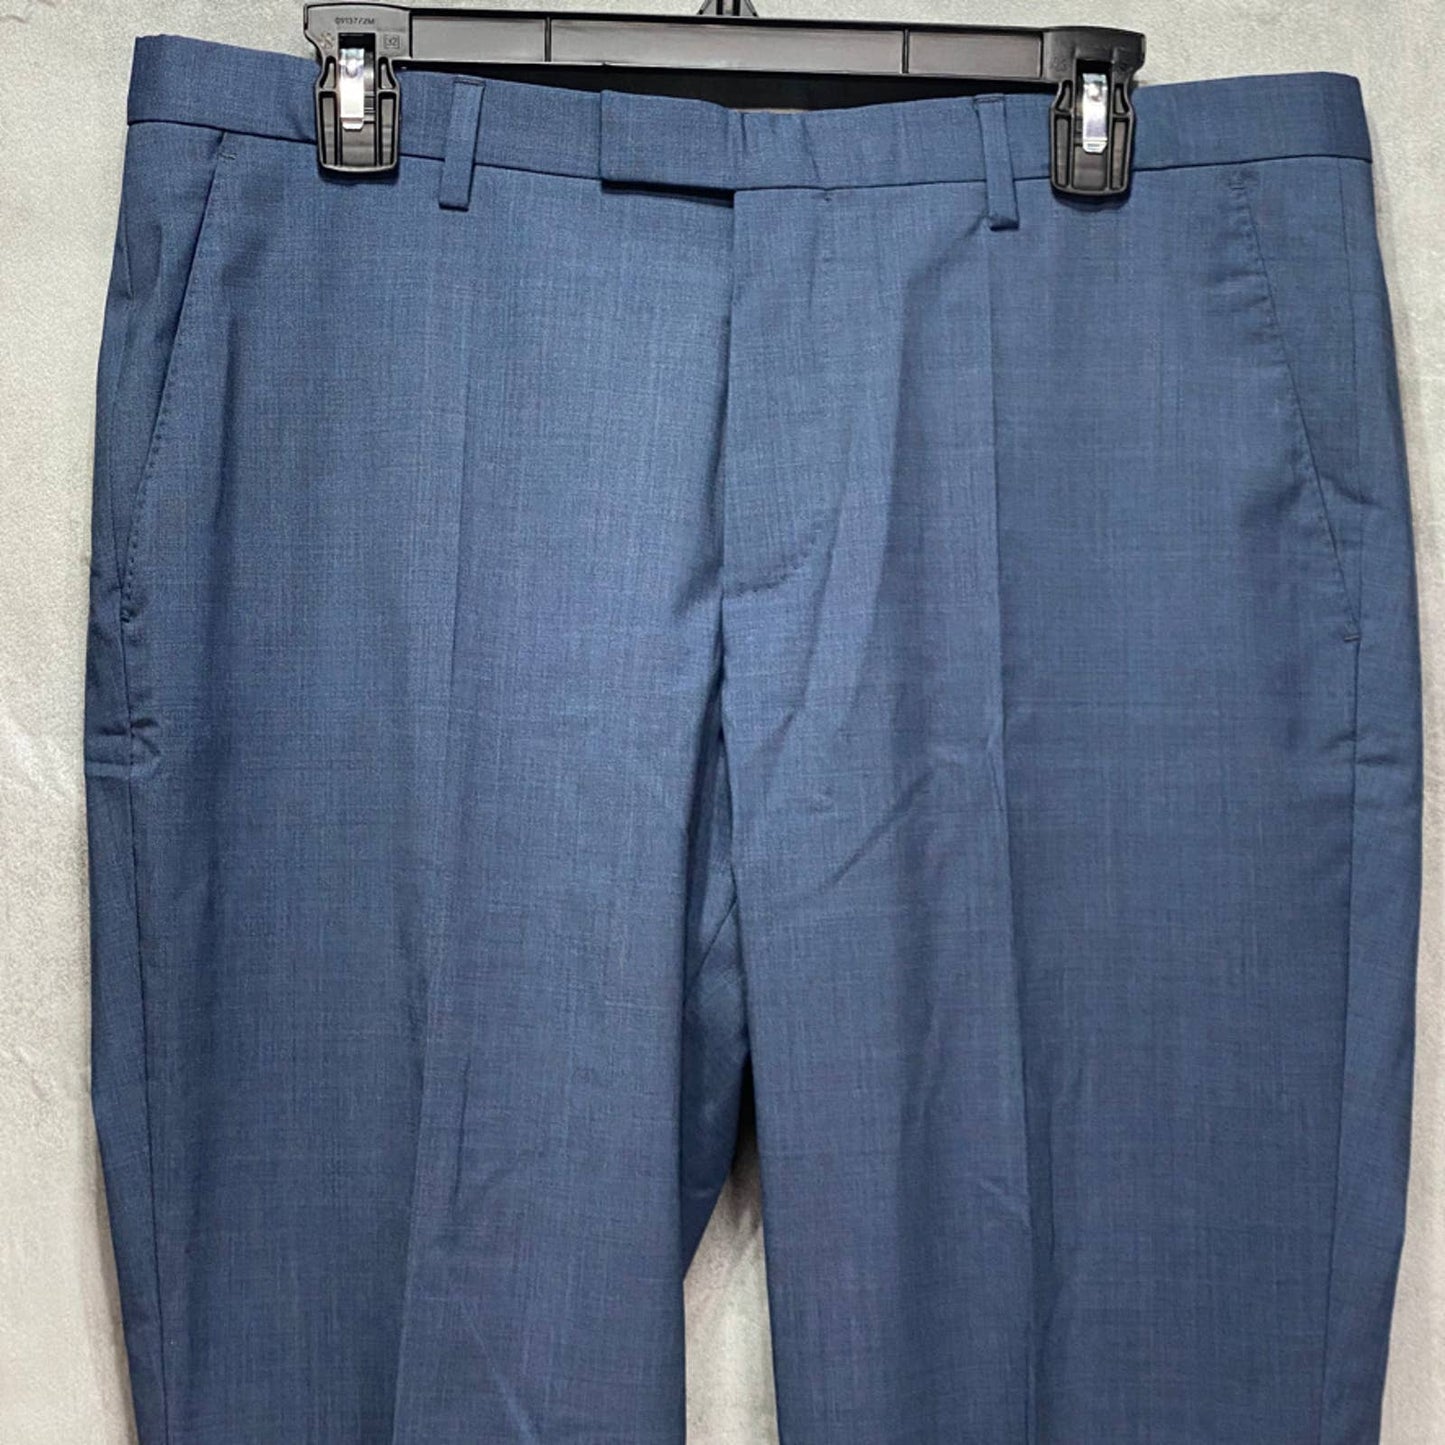 BOSS HUGO BOSS Pastel Blue Unhemmed Wool Blend Regular-Fit Dress Pants SZ 34R